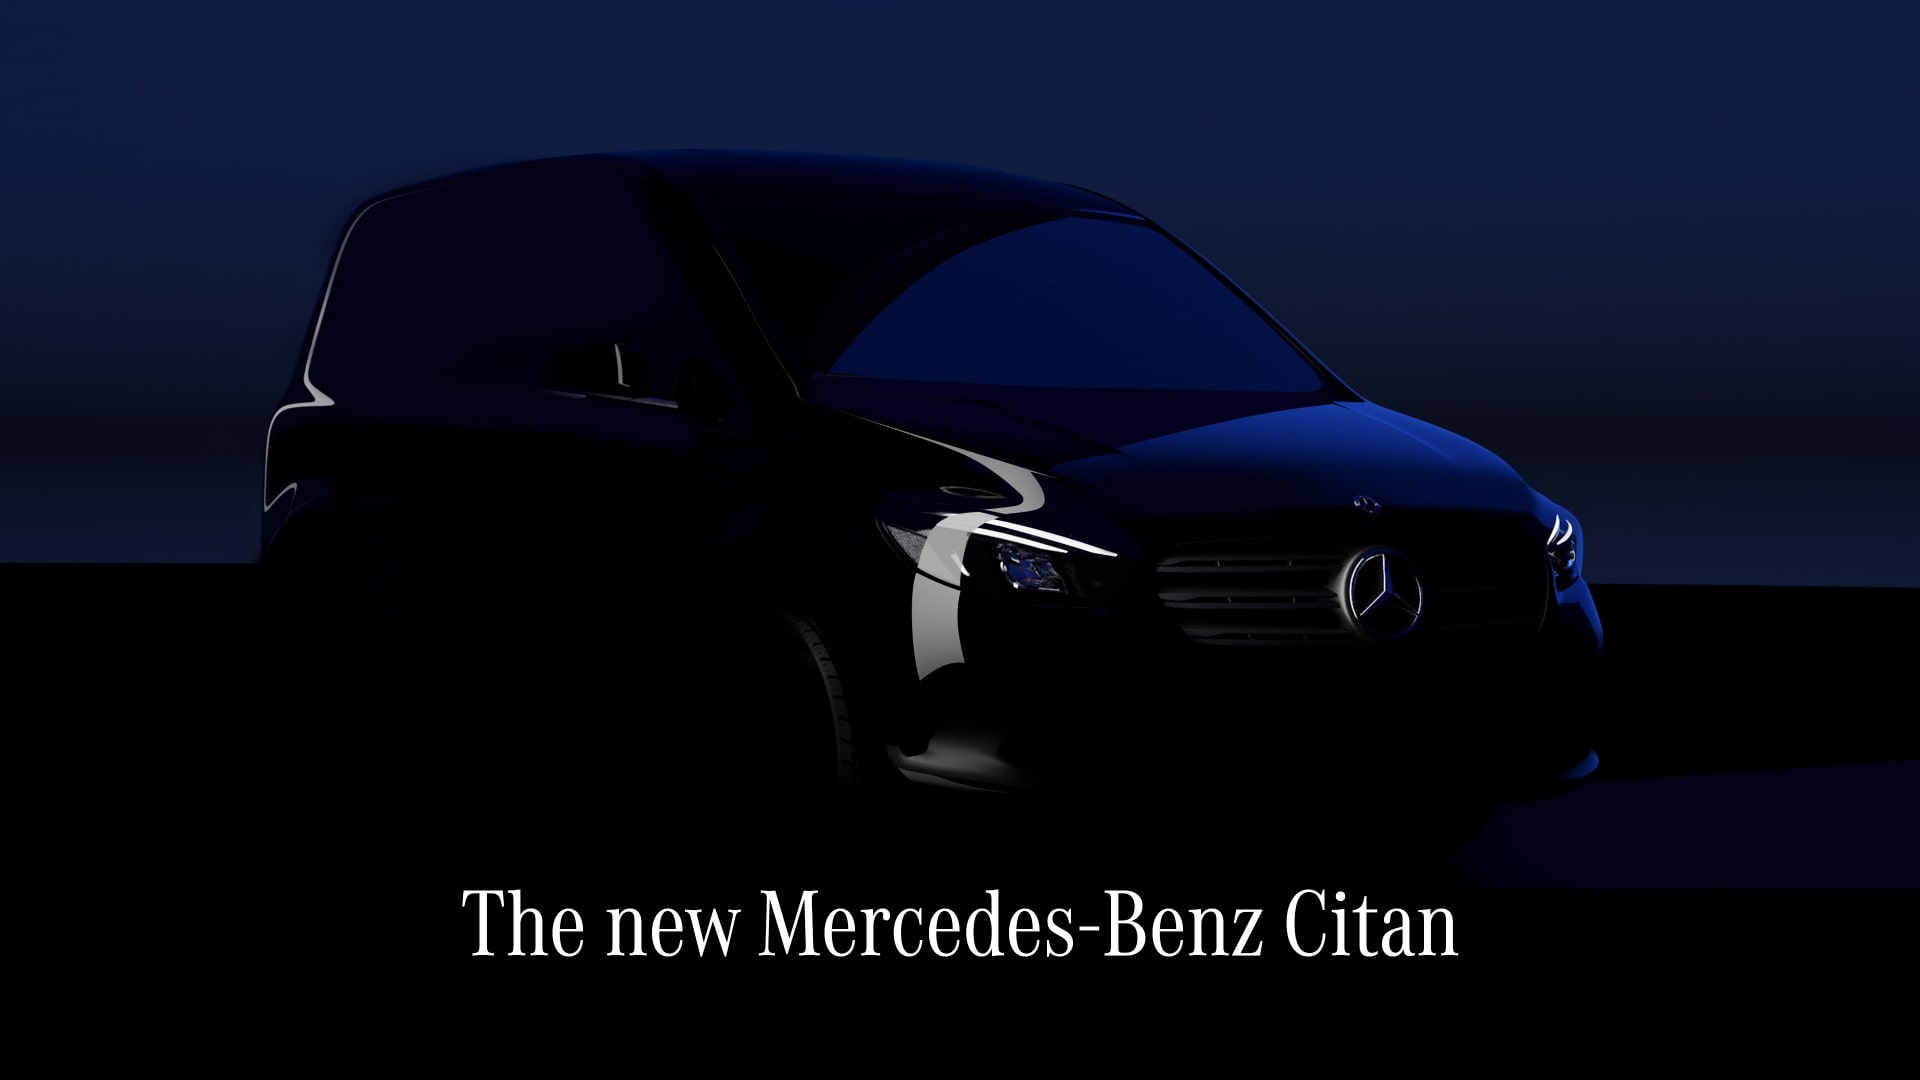 メルセデス ベンツ 商用車の新型シタン Eシタン 8月25日欧州で公開へ 中古車なら グーネット